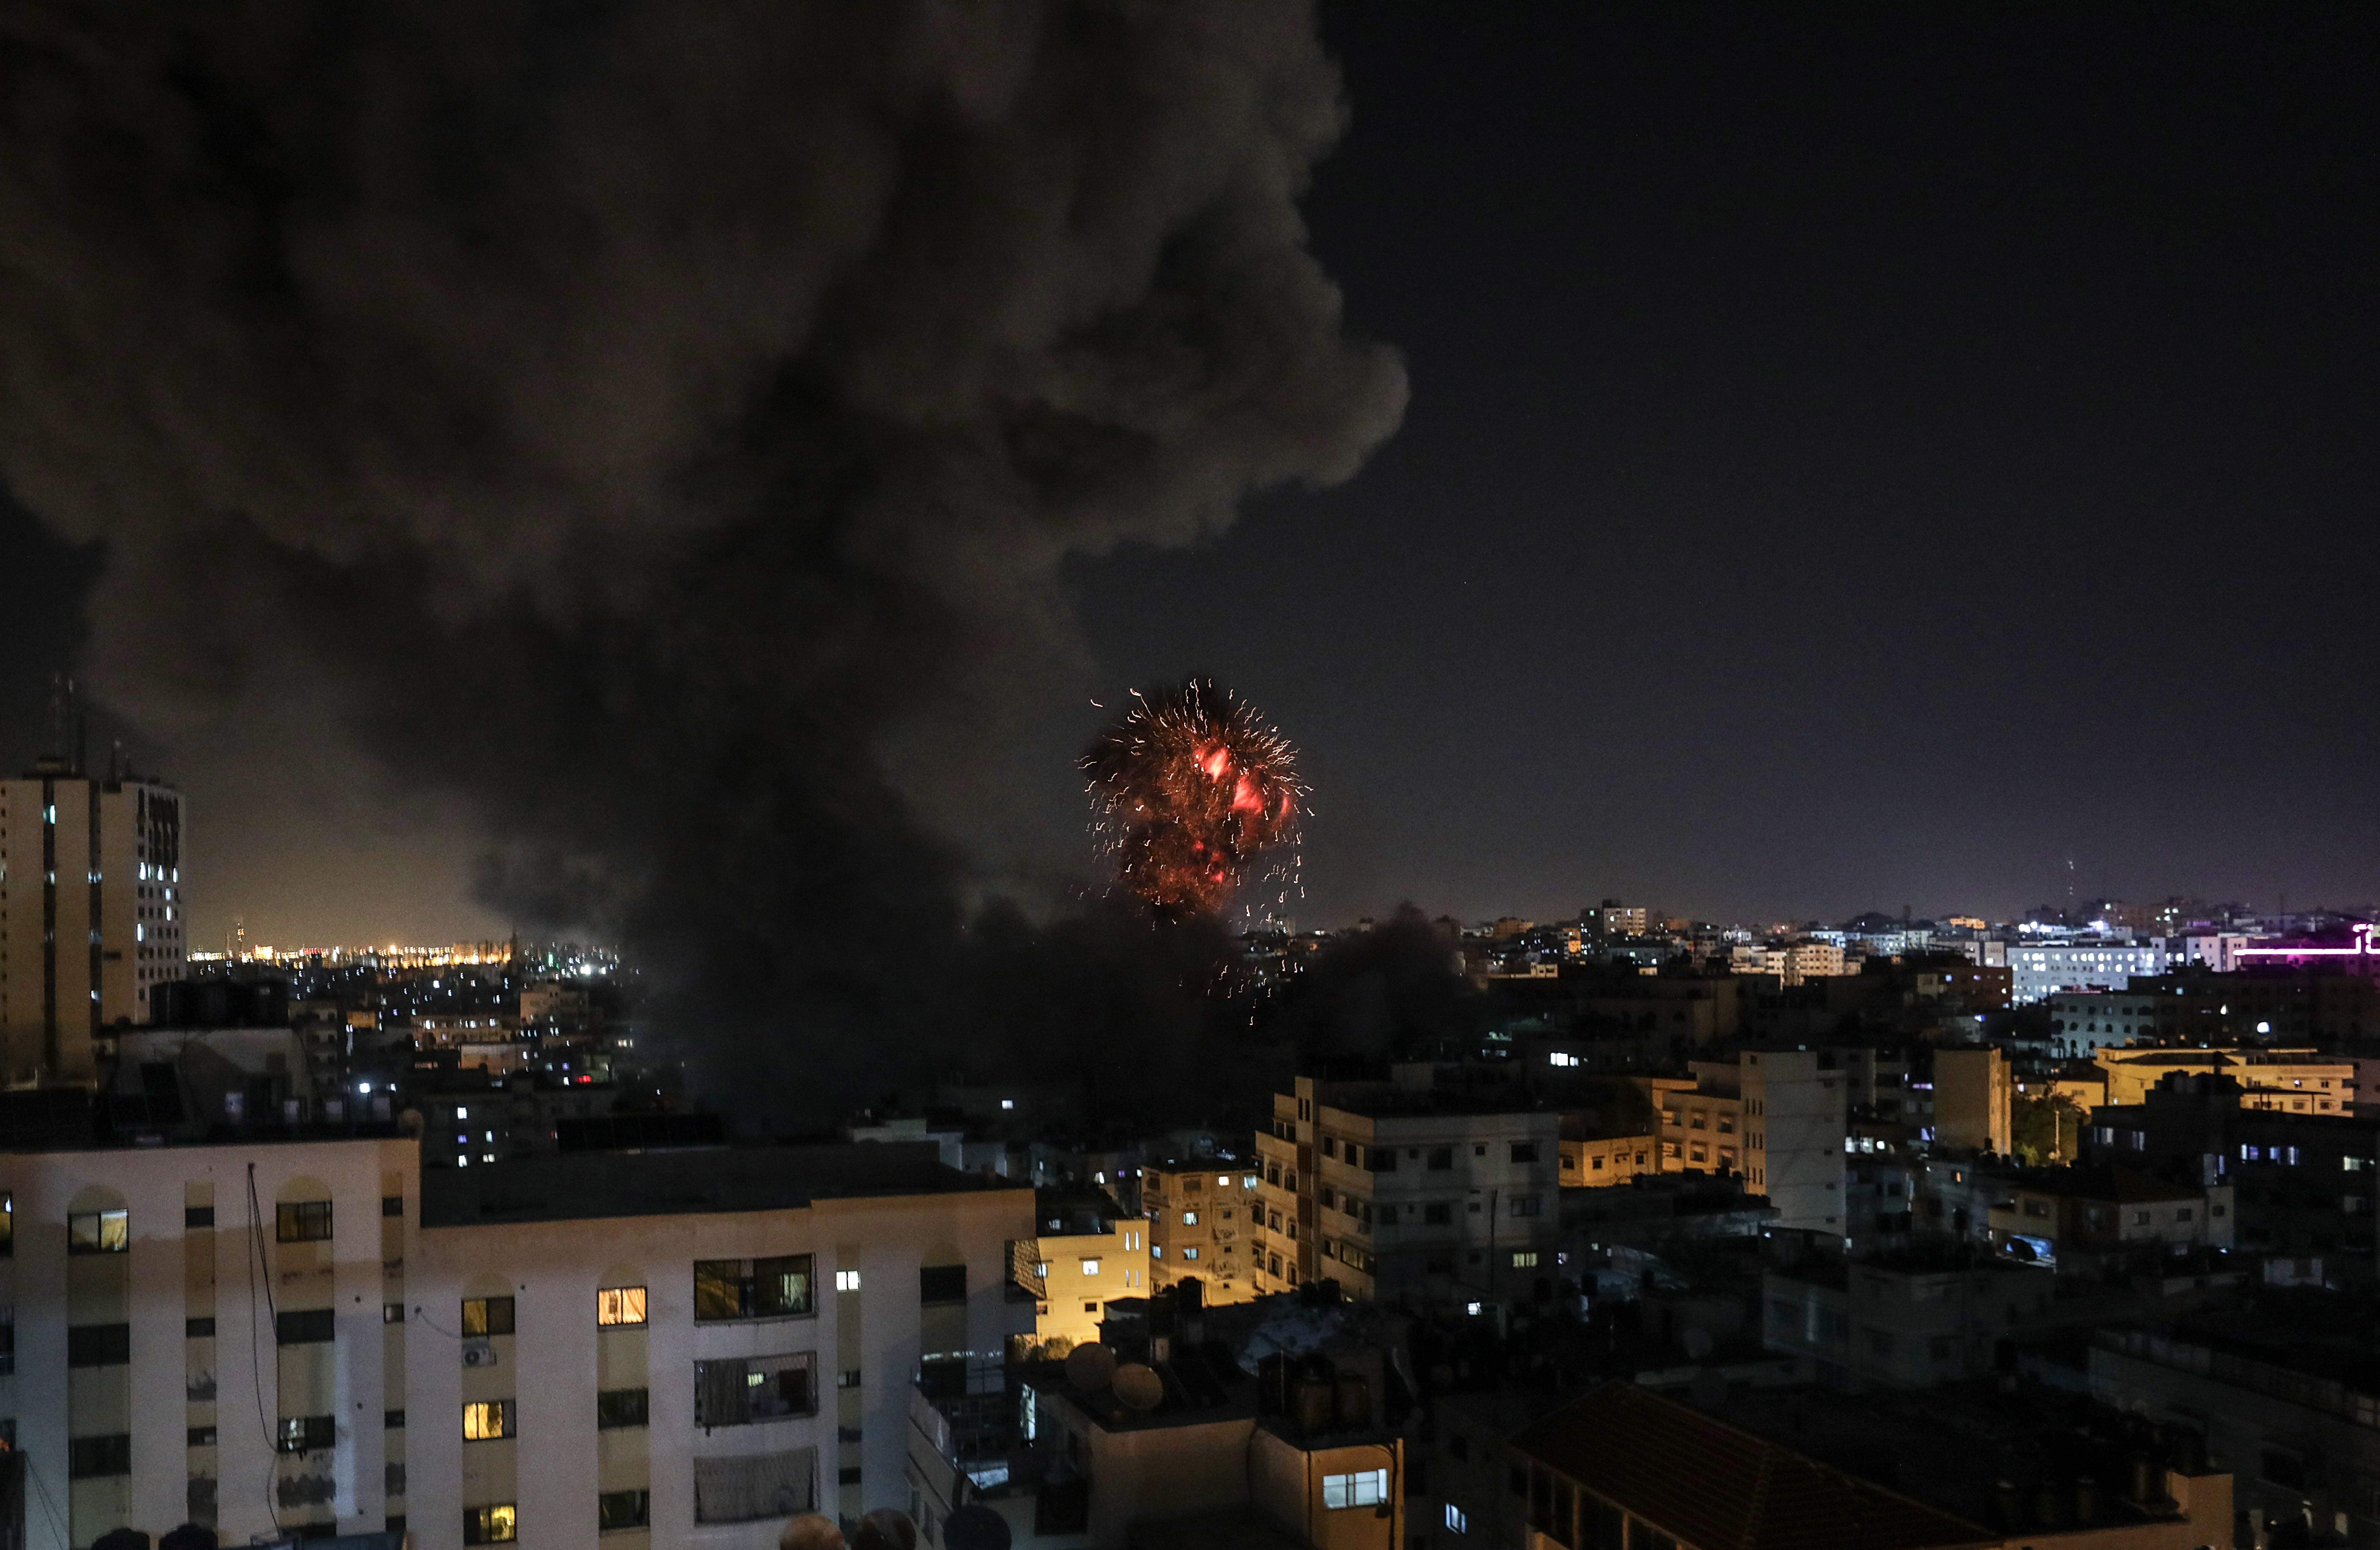 Llancen 300 coets contra Israel des de Gaza